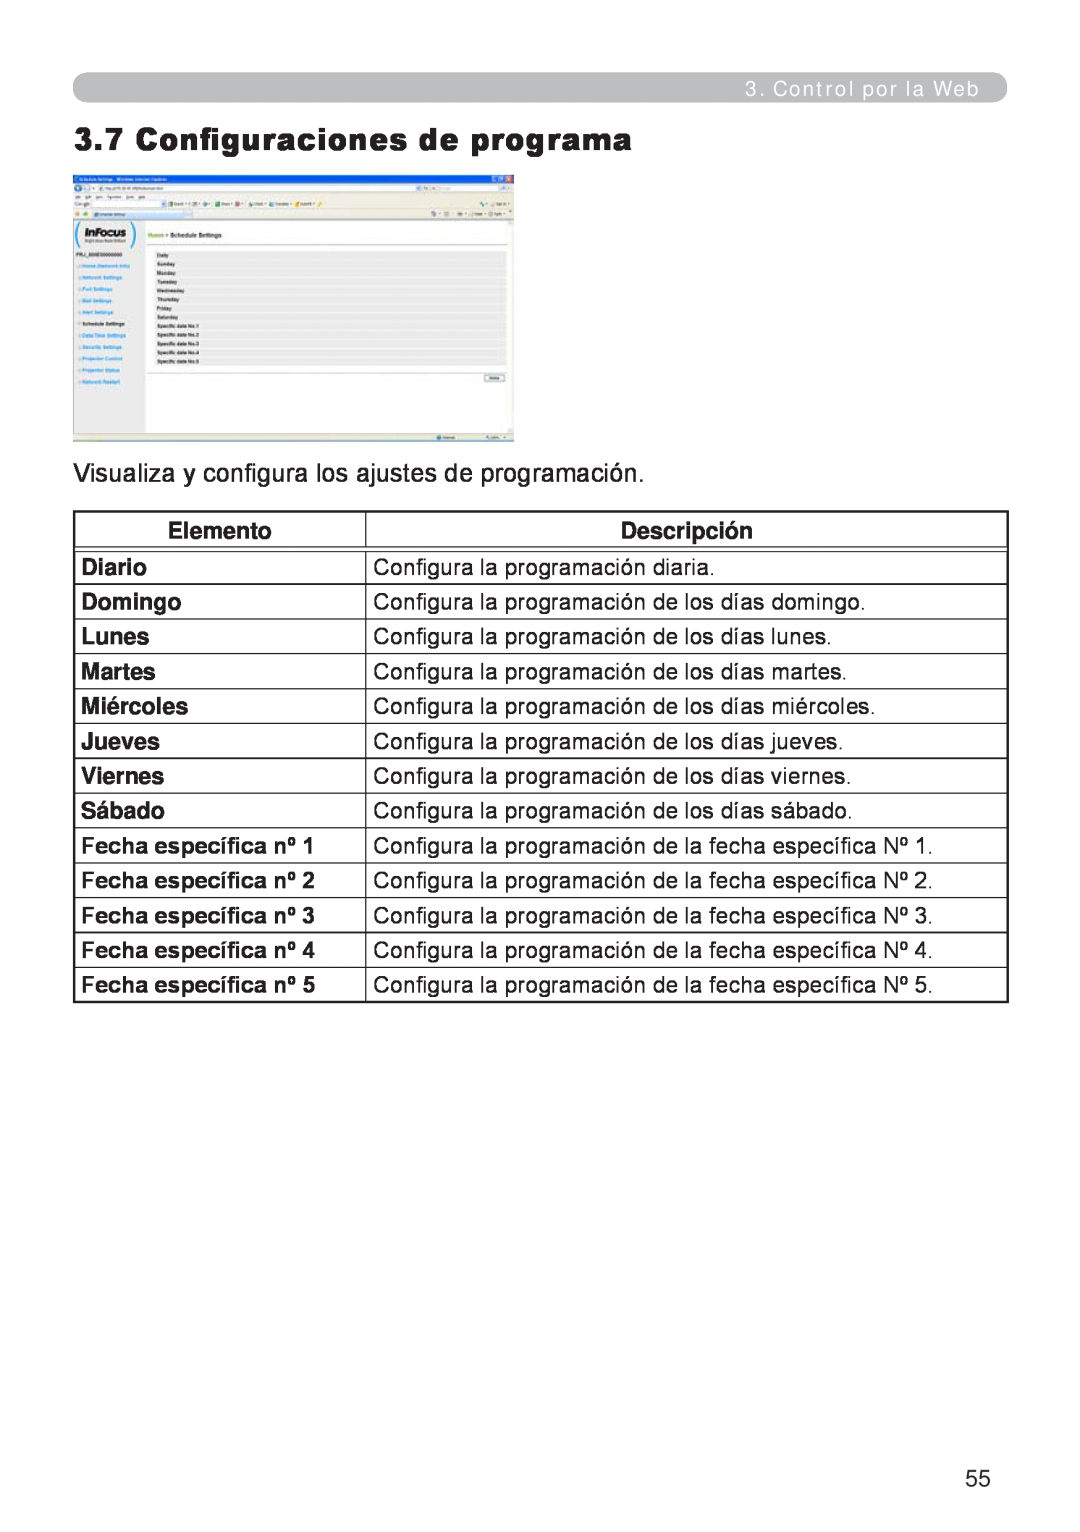 InFocus W60, W61 manual Configuraciones de programa, Visualiza y configura los ajustes de programación 